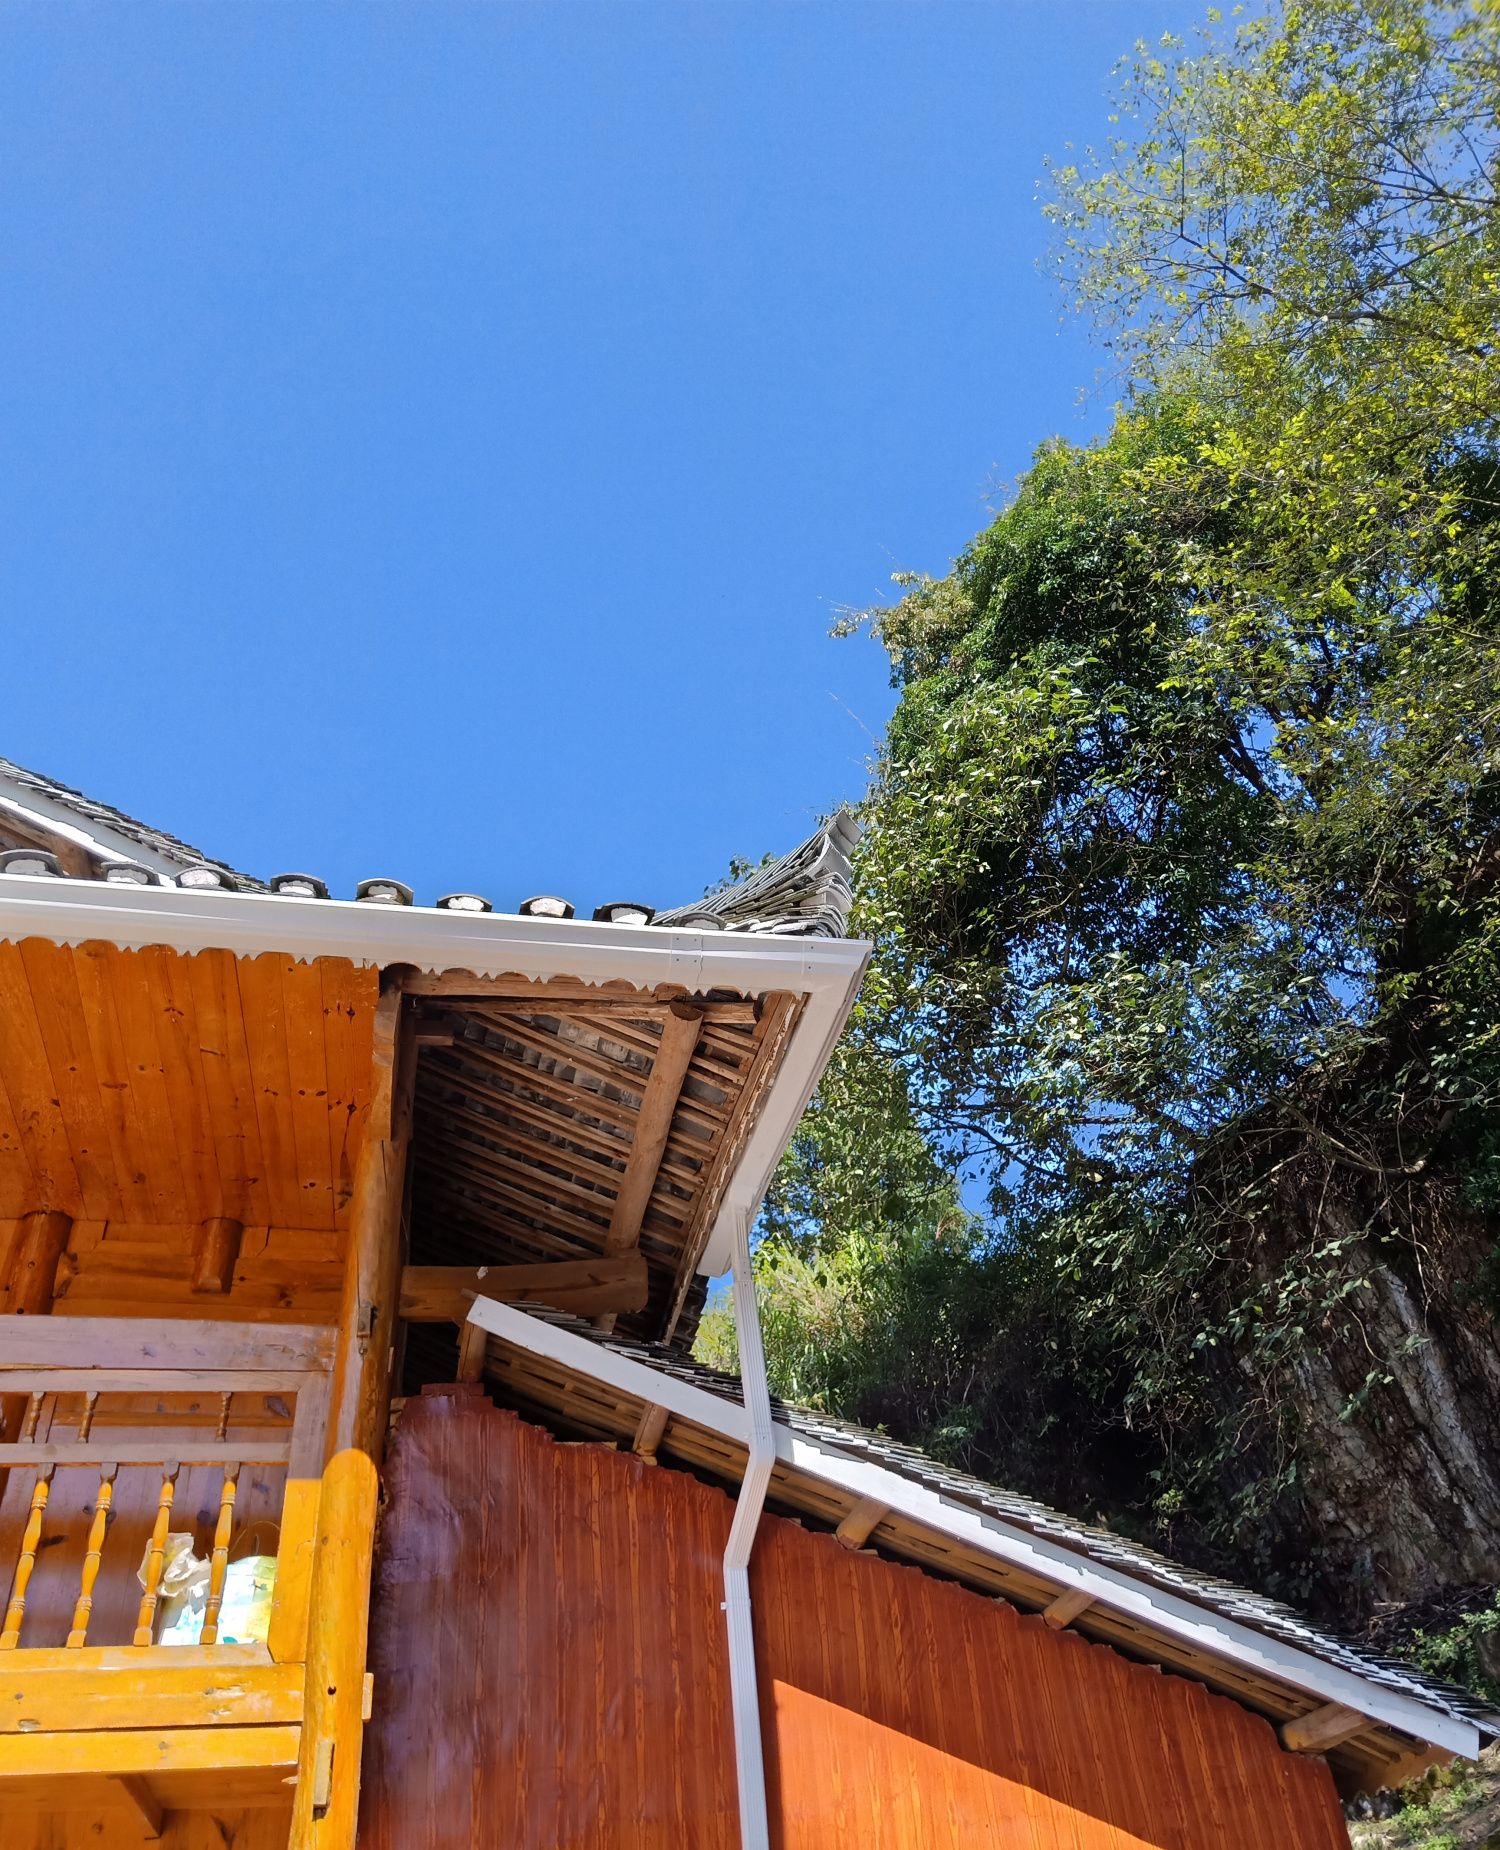 【携程攻略】贵州南龙布依古寨景点,很古老的布依族寨子。里面的房子都是木制的。家庭条件好的，进门台阶…